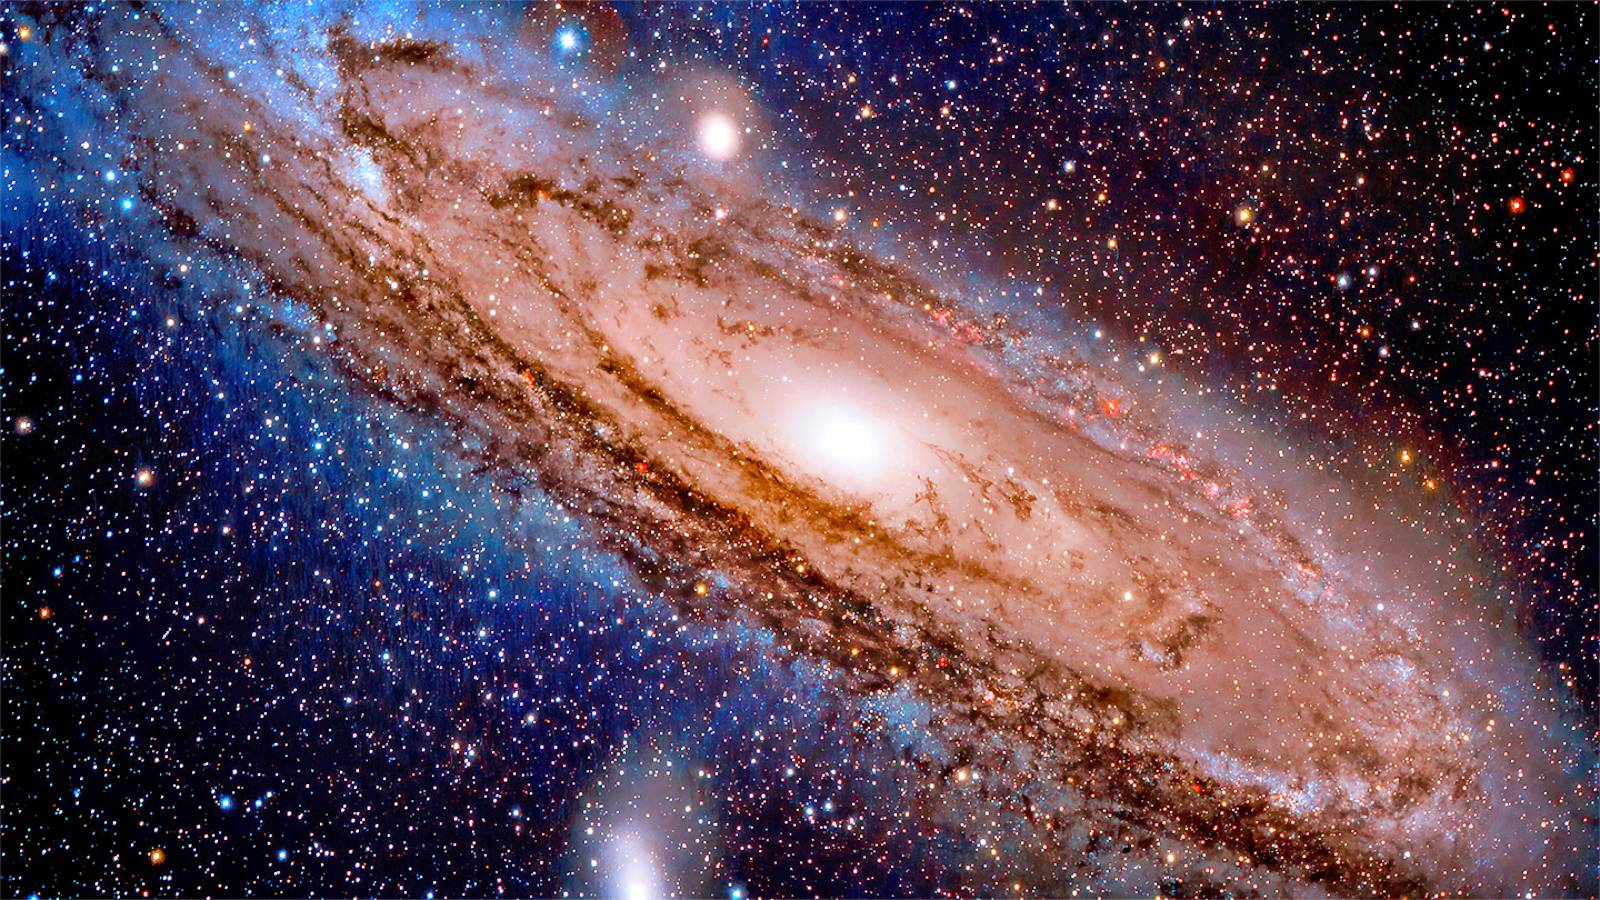 (FOTO) Movimientos de la Vía Láctea captados por el telescopio GAIA de la NASA